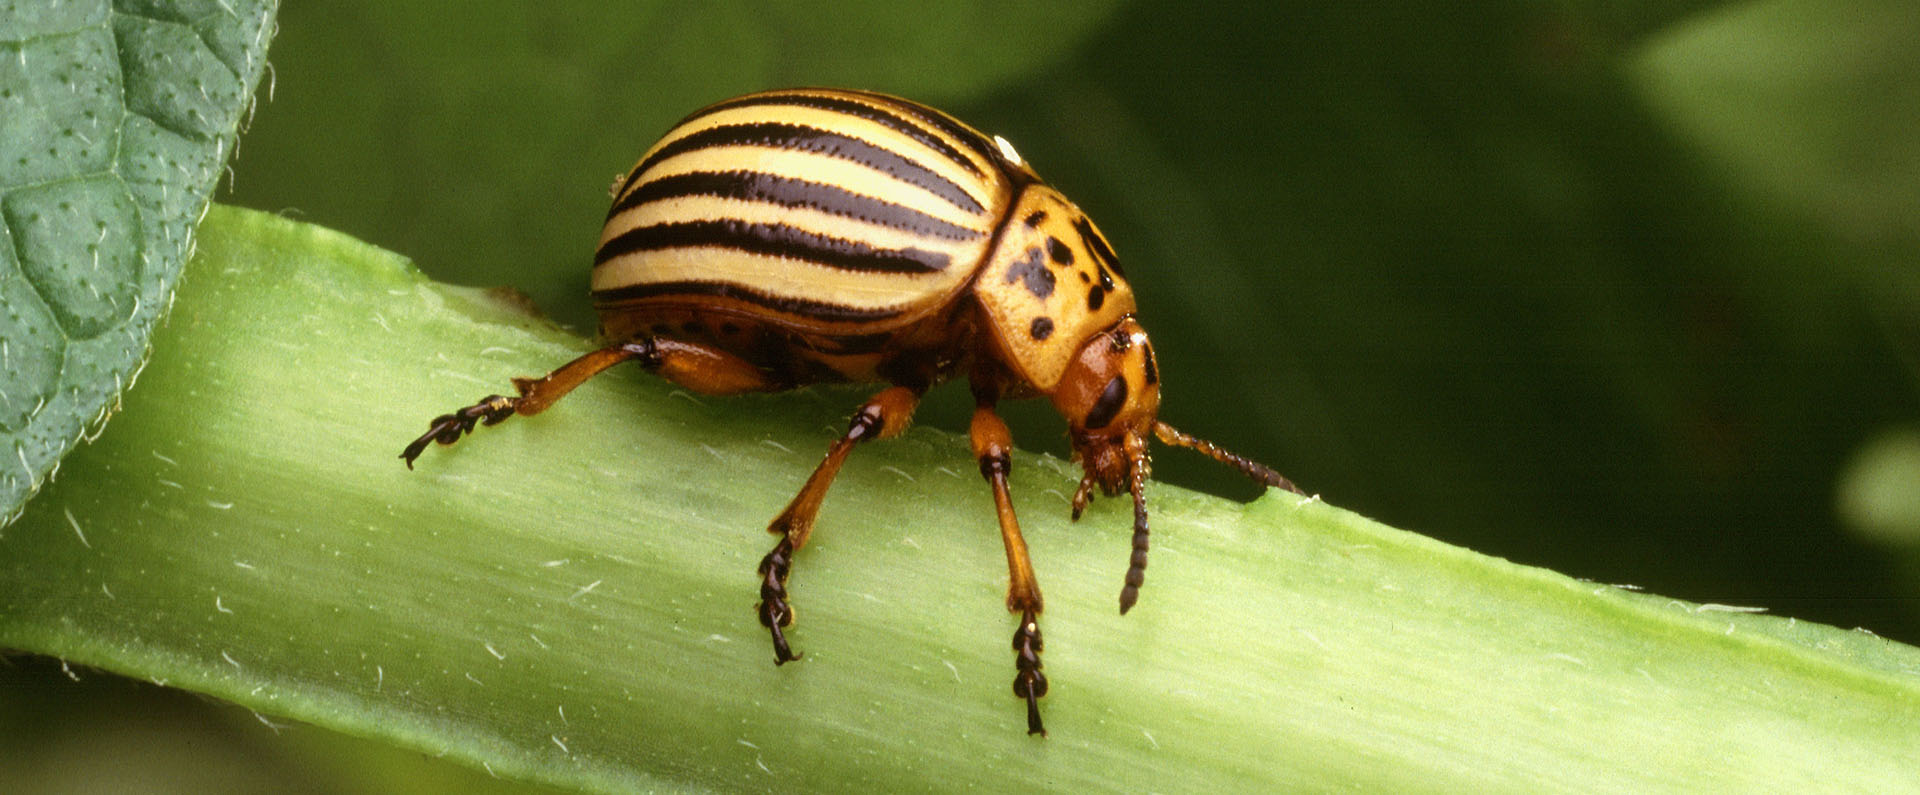 Adult Colorado potato beetle on a stem